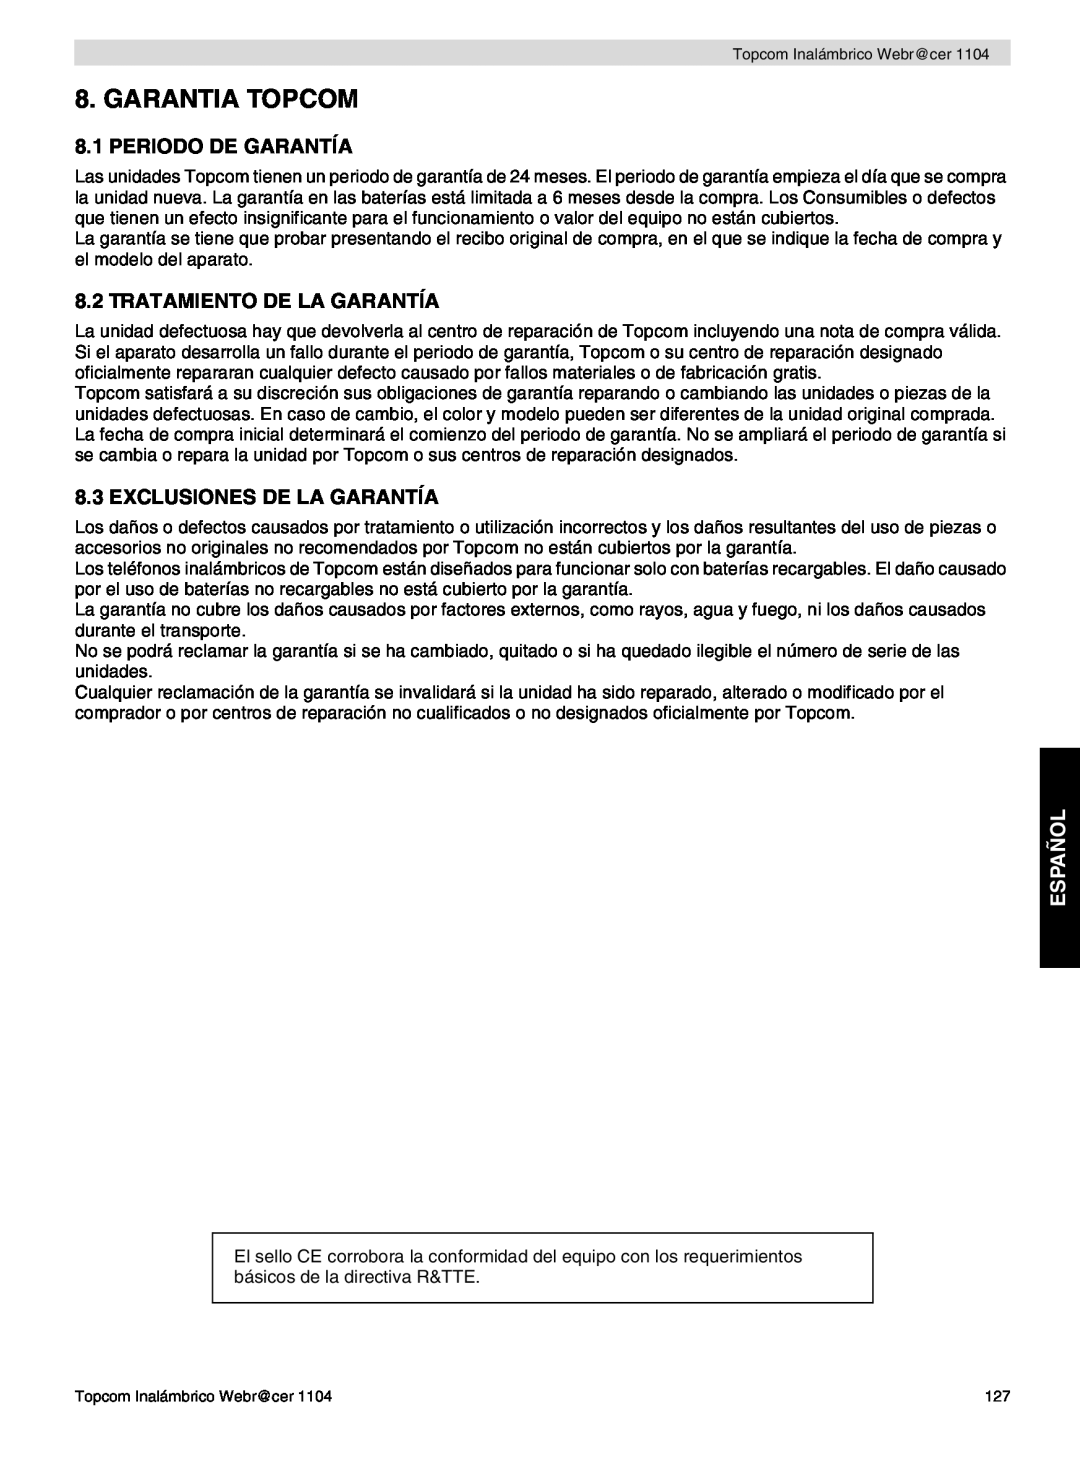 Topcom 1104 Garantia Topcom, Periodo De Garantía, Tratamiento De La Garantía, Exclusiones De La Garantía, Español 